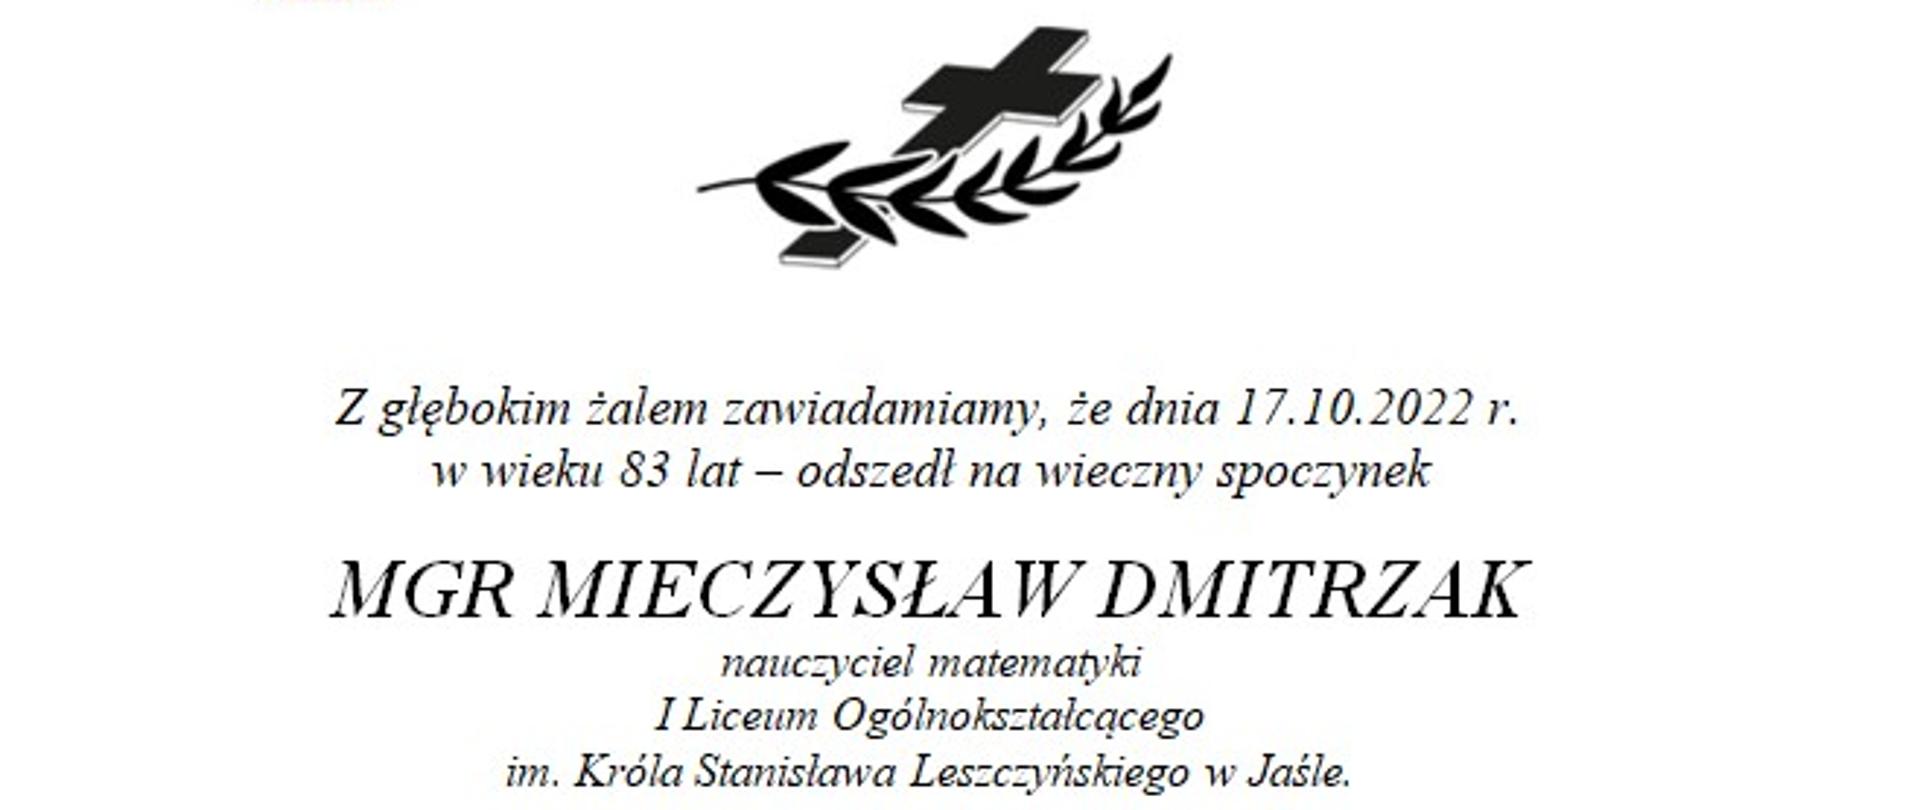 Klepsydra Ś.P. Mieczysława Dmitrzaka